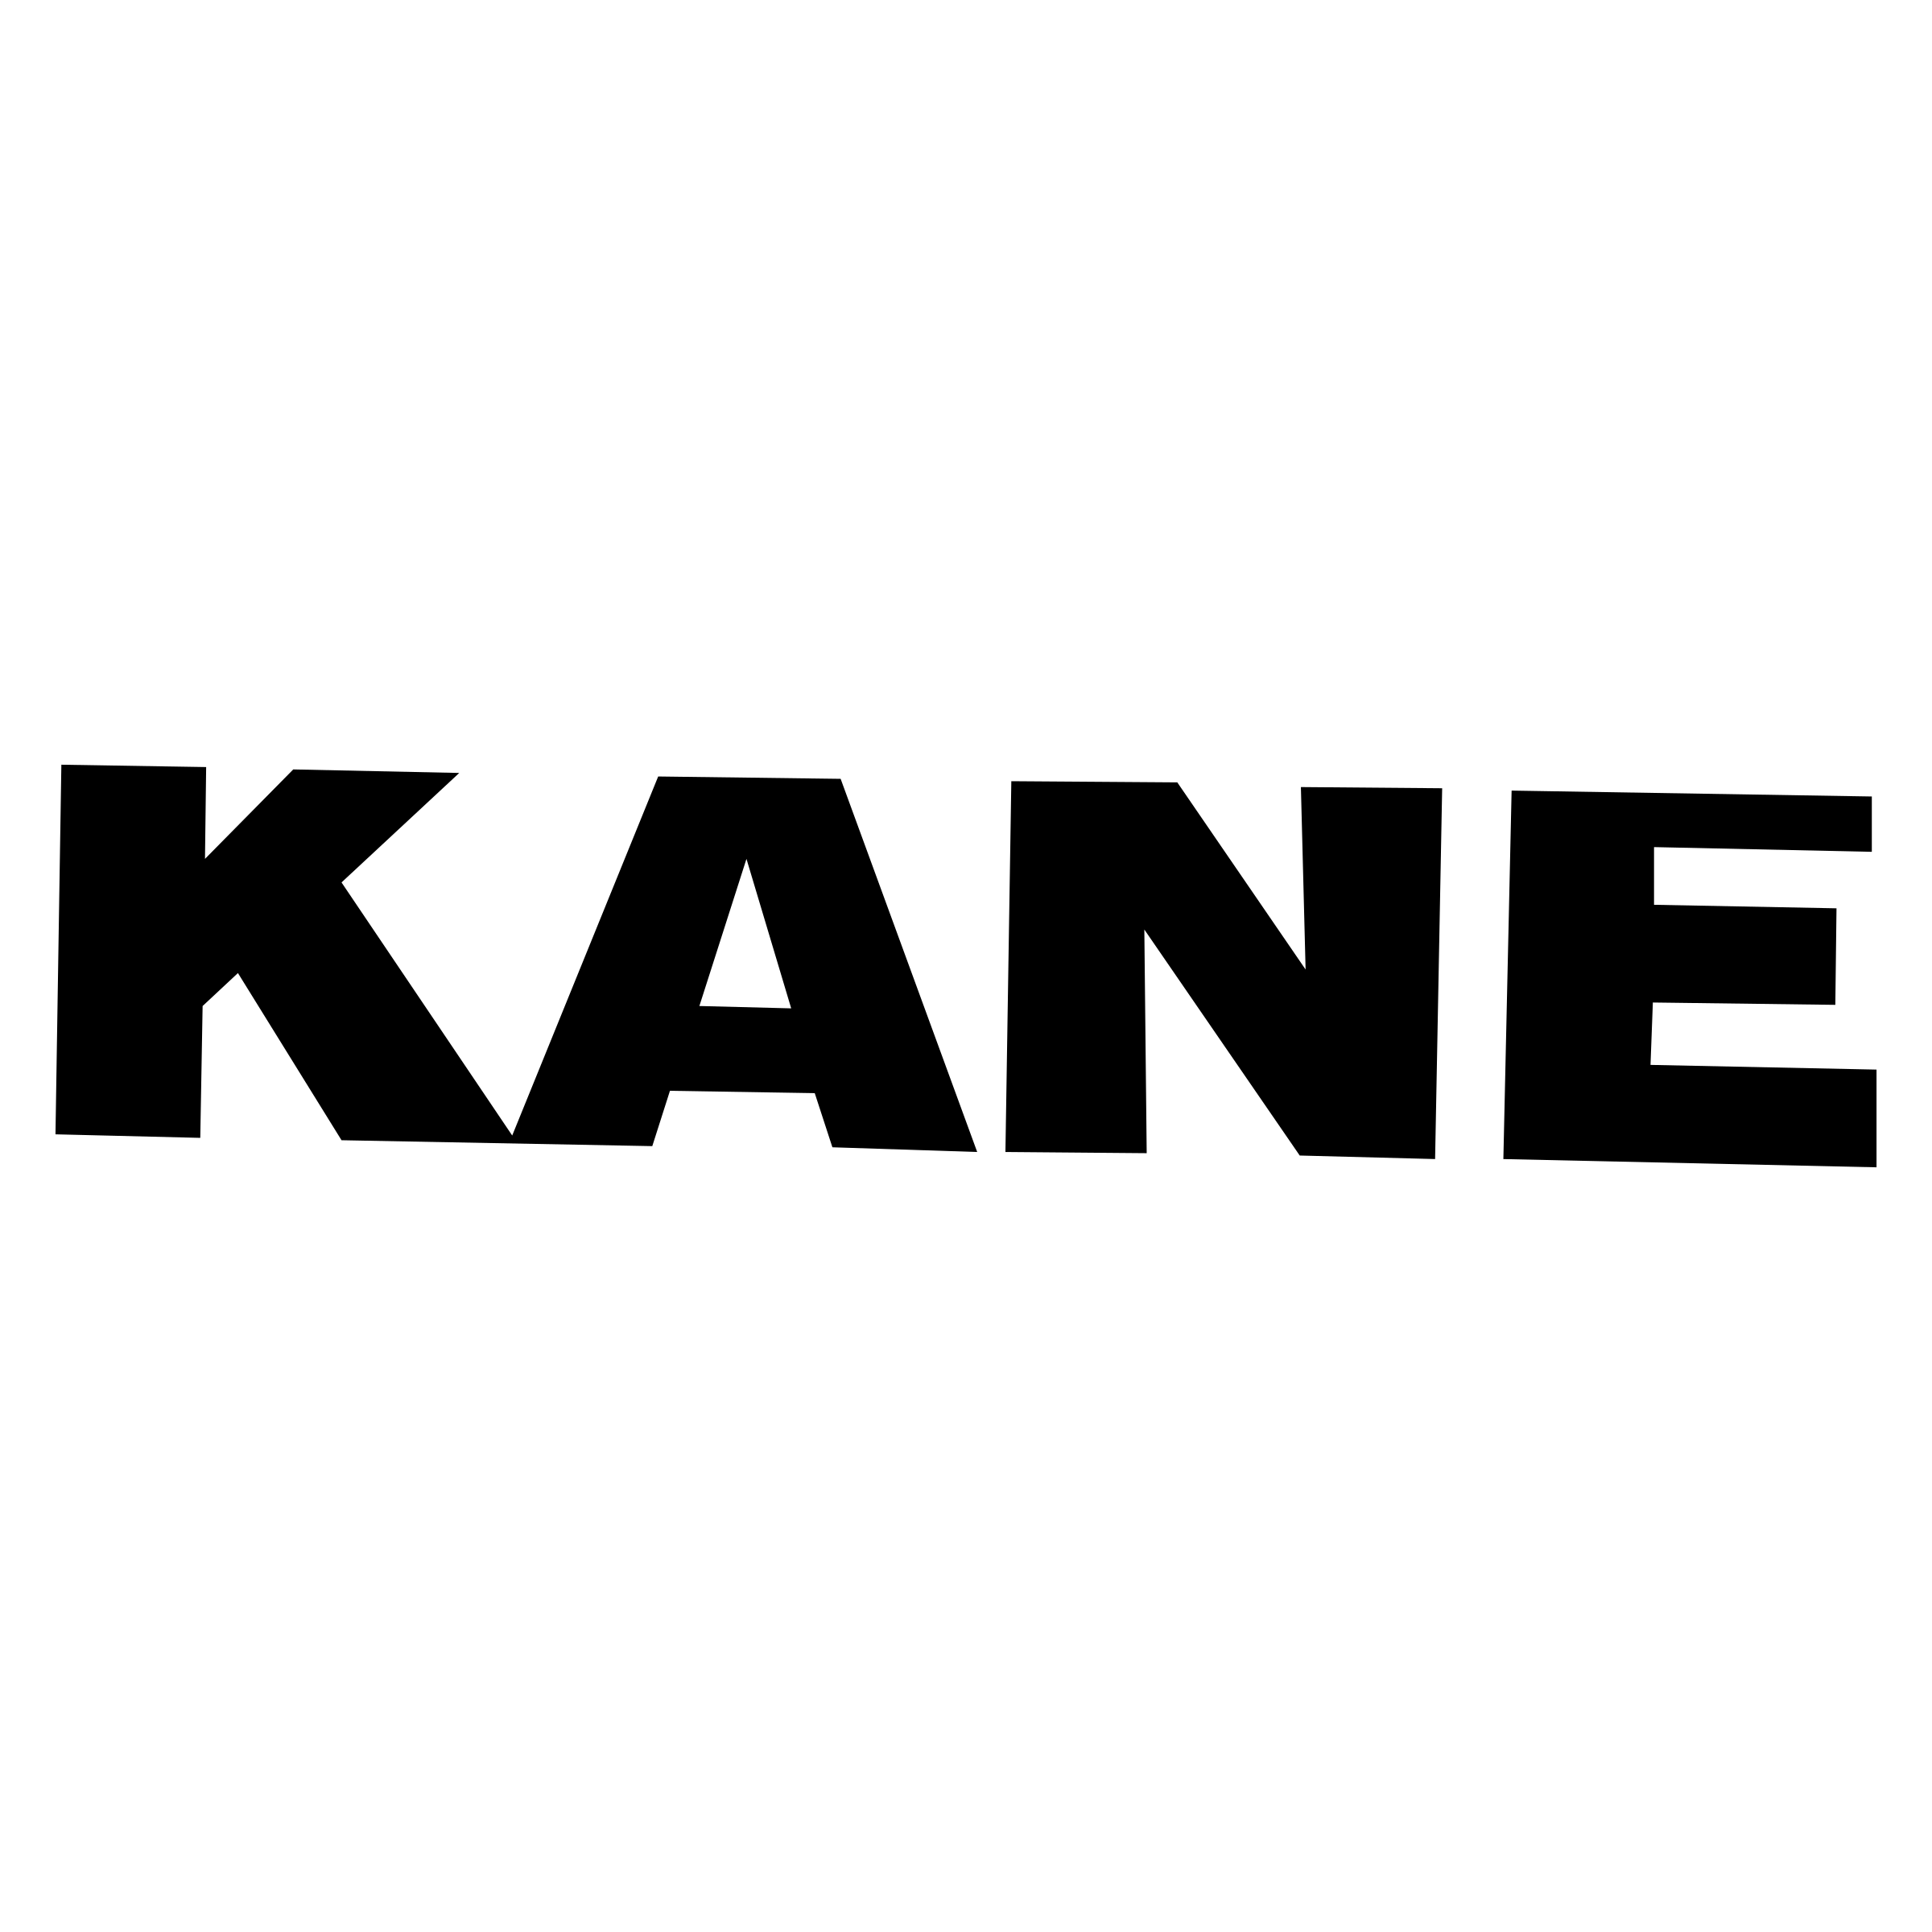 Kane logo